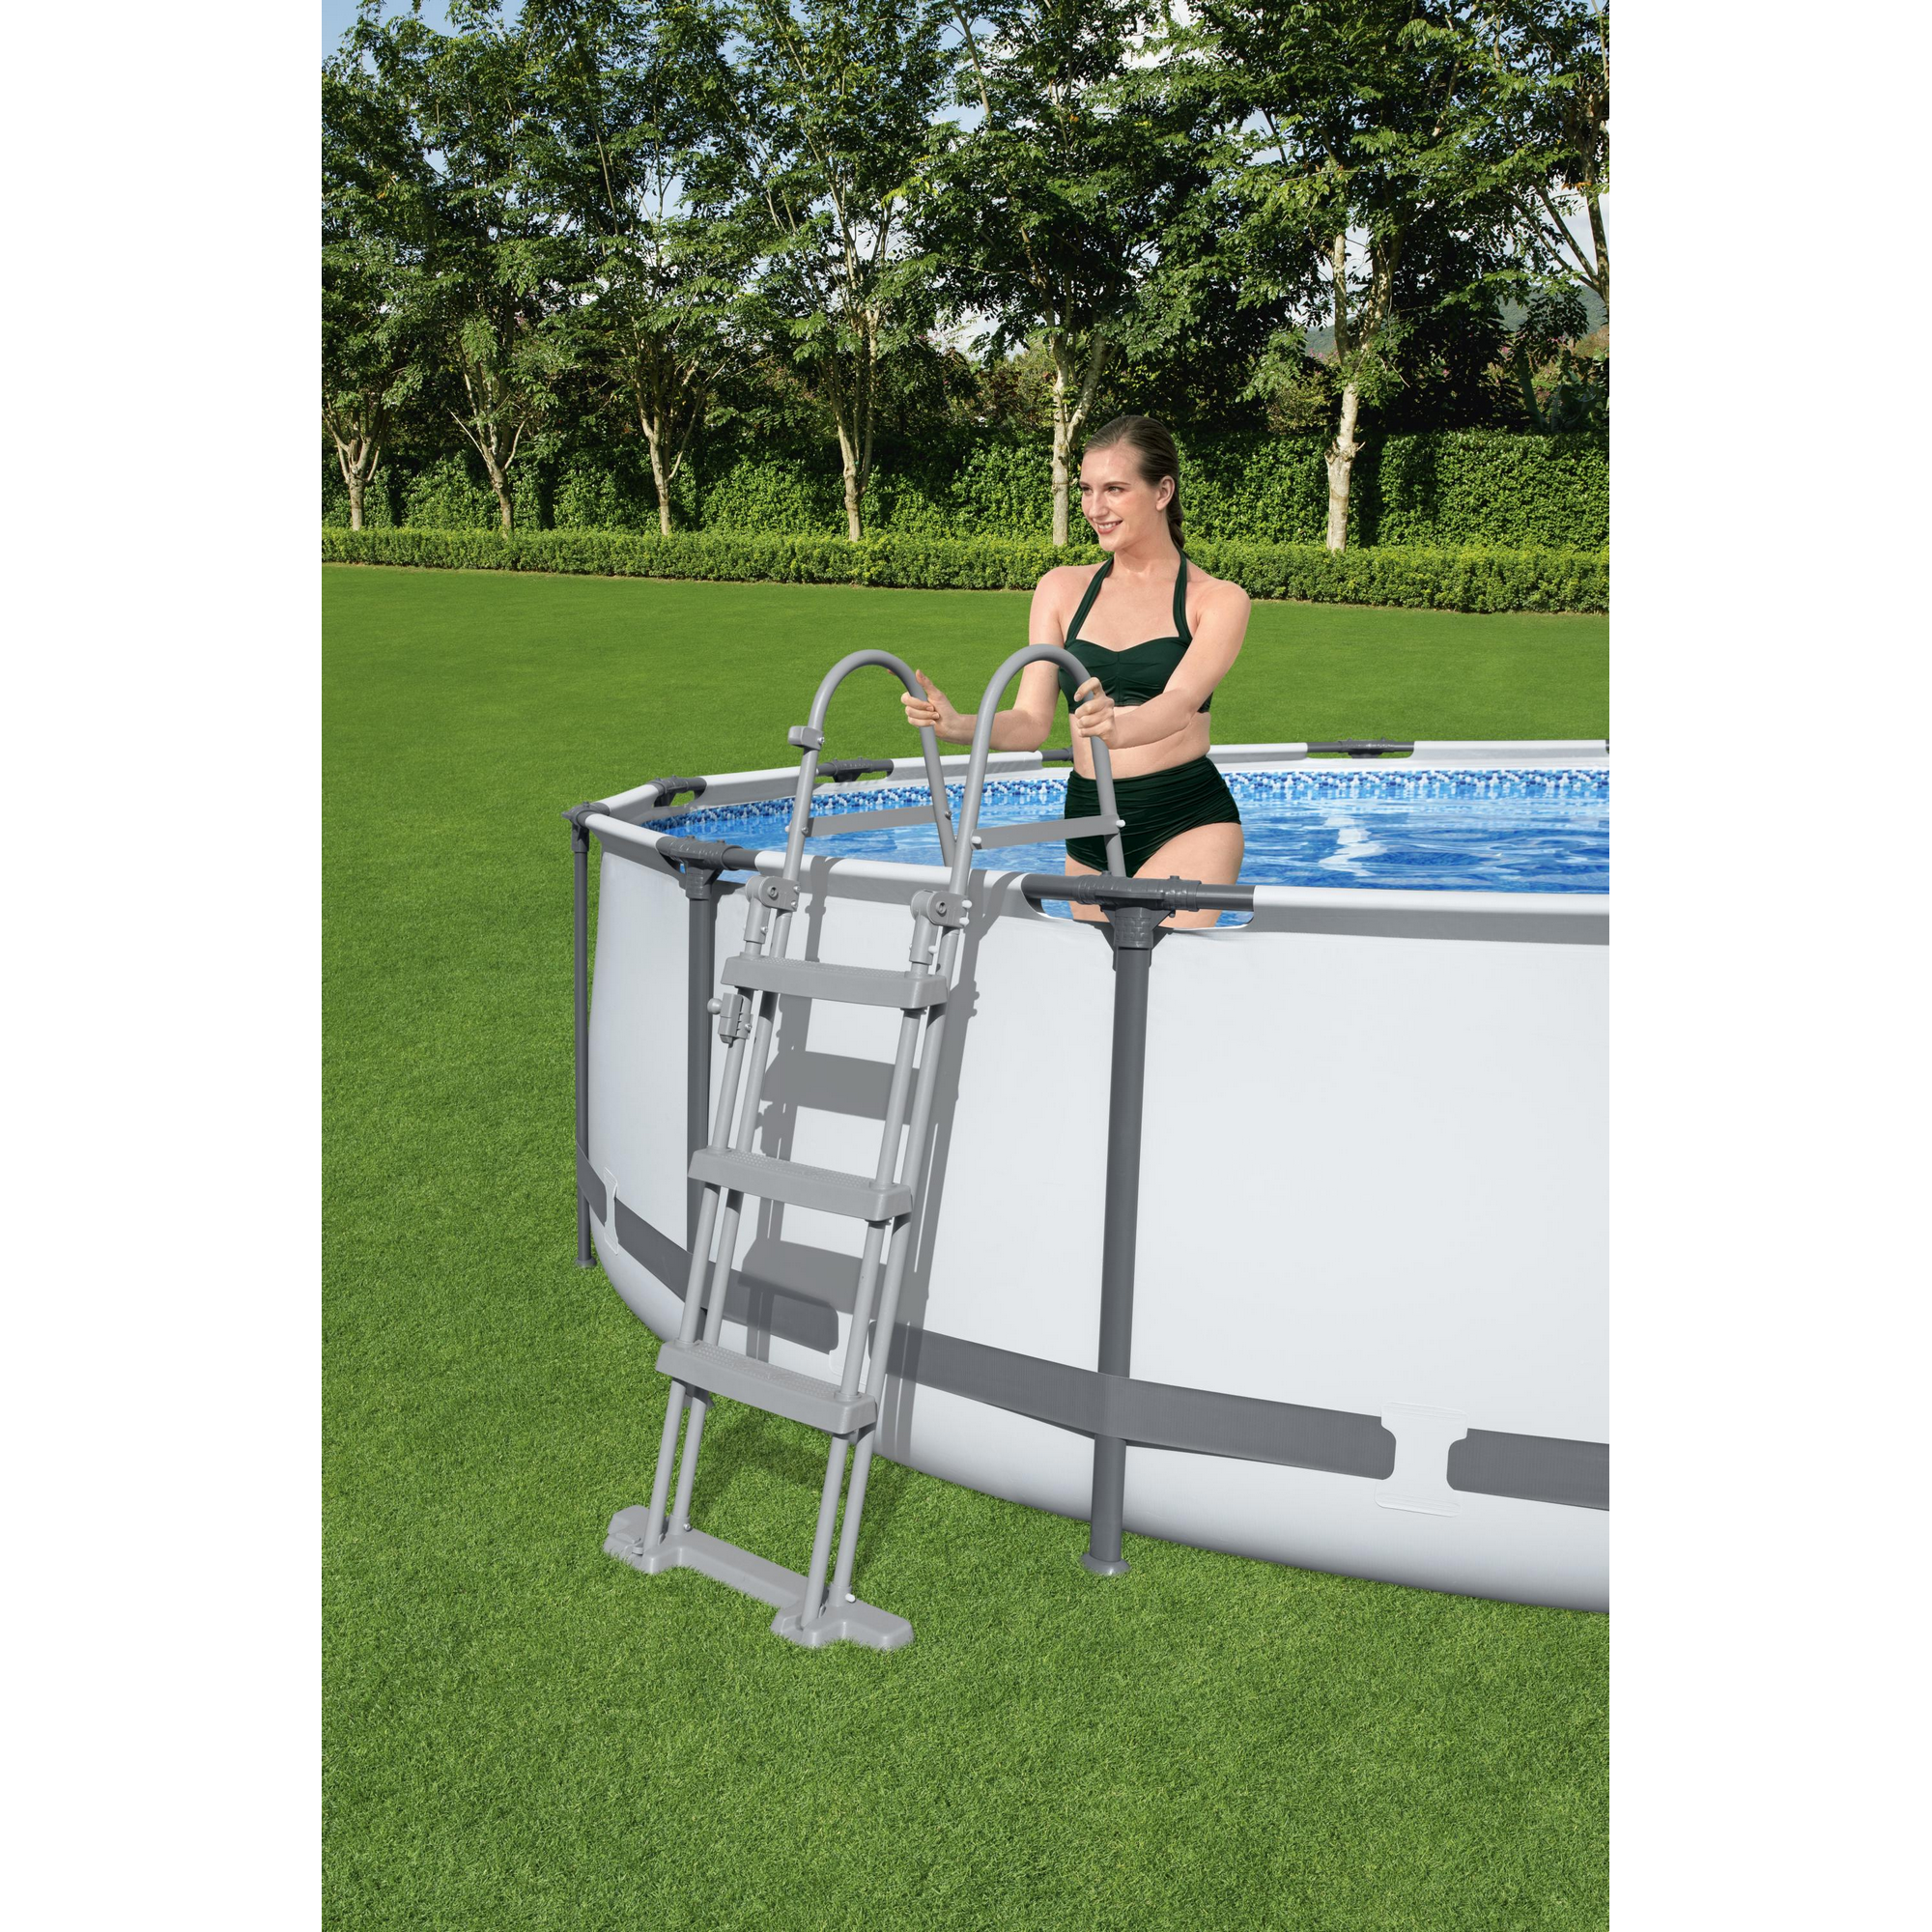 Pool-Sicherheitsleiter 'Flowclear™' Stahl 2 x 3 Stufen, 107 cm + product picture